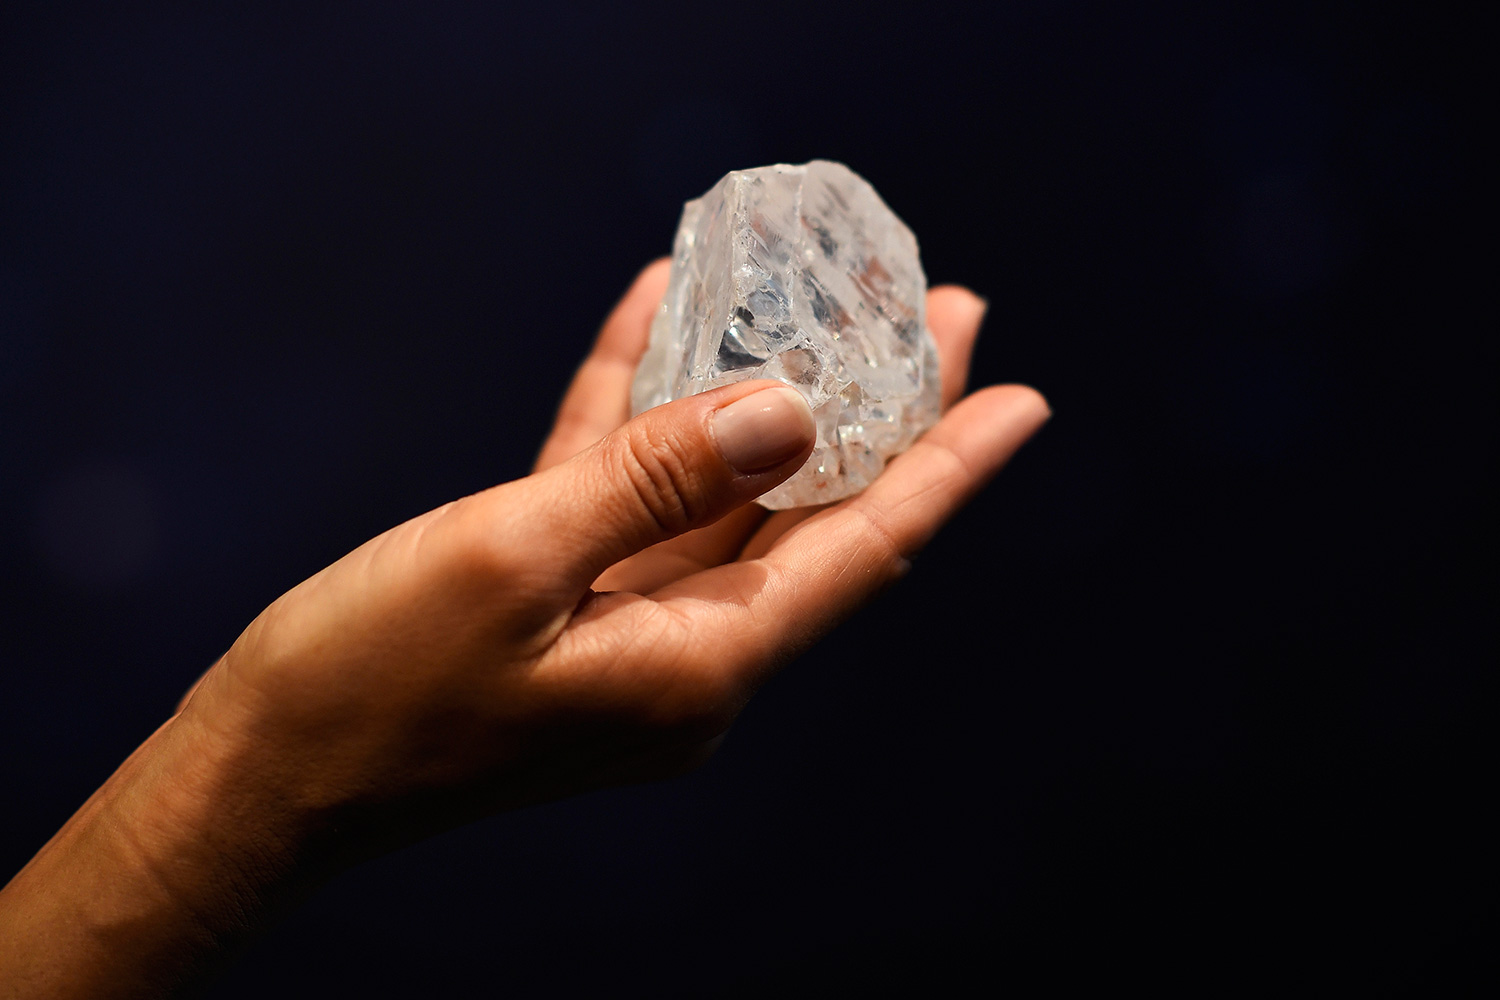 Lesedi la Rona Алмаз. Алмаз неограненный камень. Самый большой Алмаз в мире.